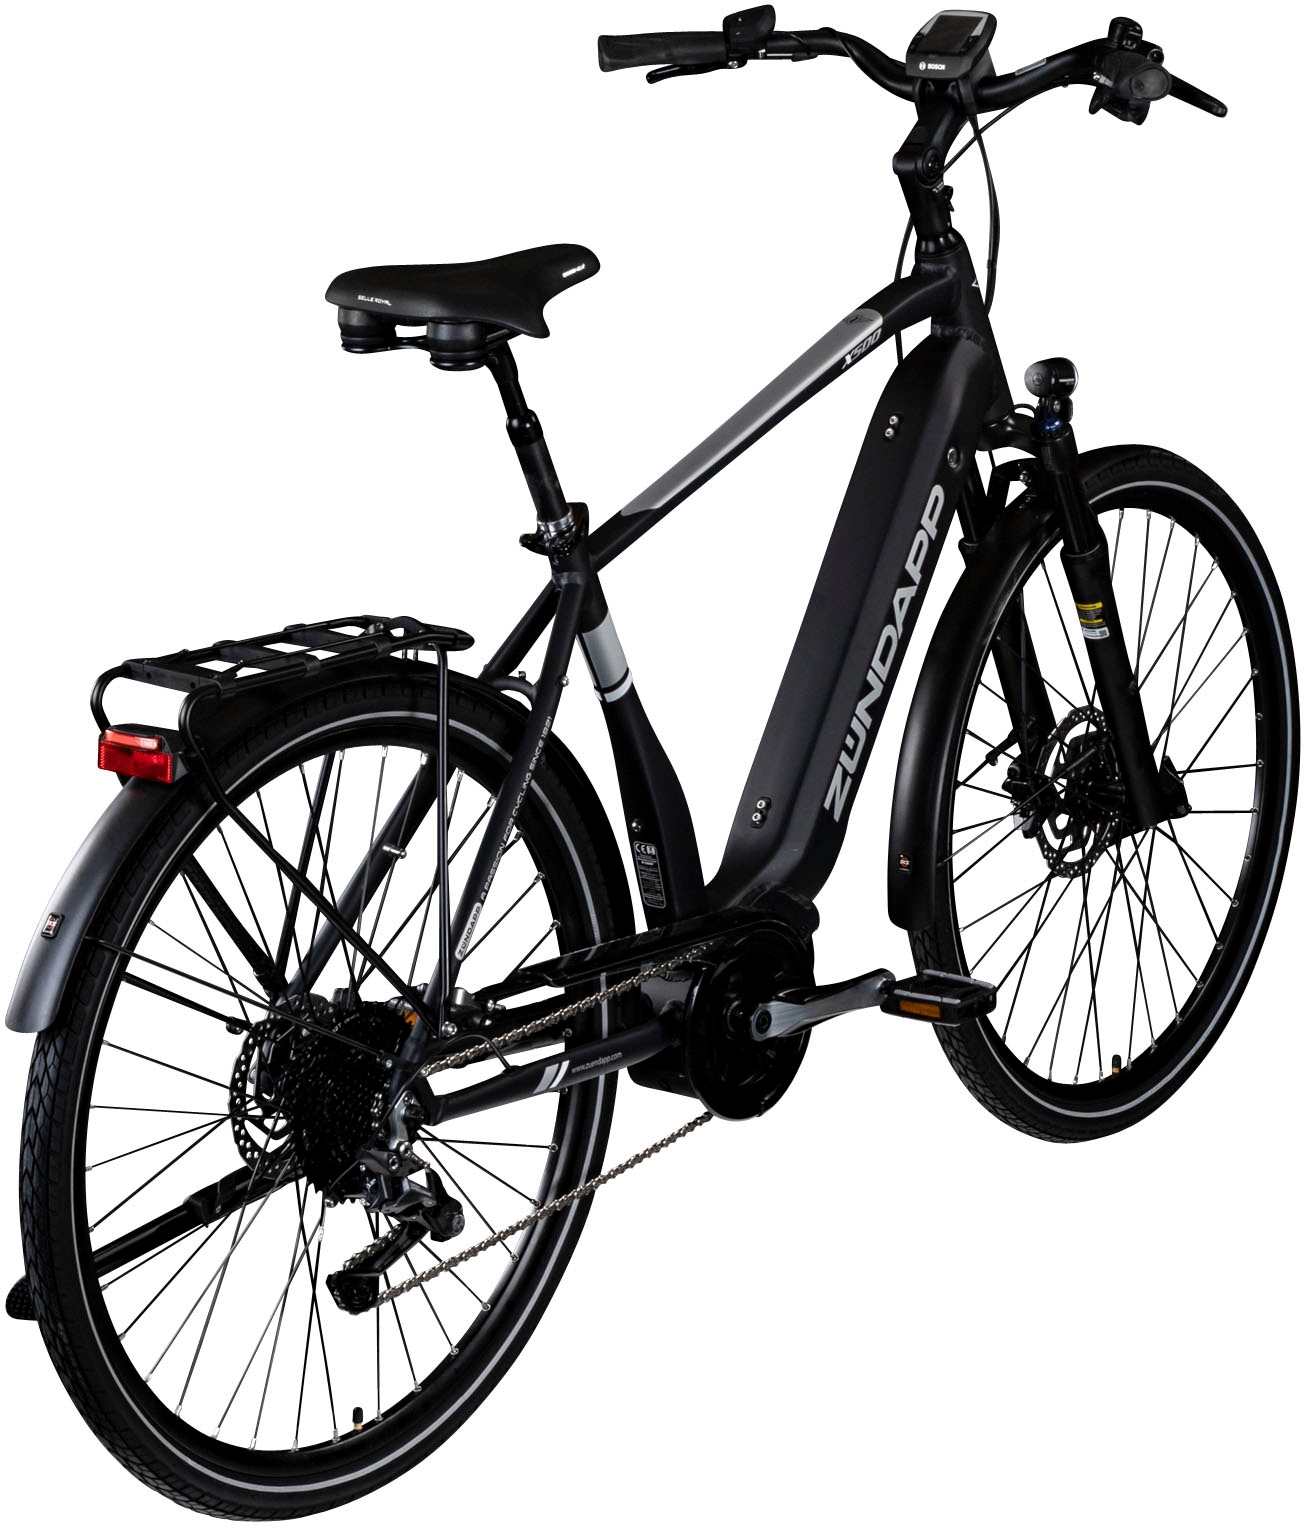 Zündapp E-Bike »X500«, 11 Gang, Shimano, Deore, Mittelmotor 250 W, Pedelec, Elektrofahrrad für Damen u. Herren, Trekkingrad